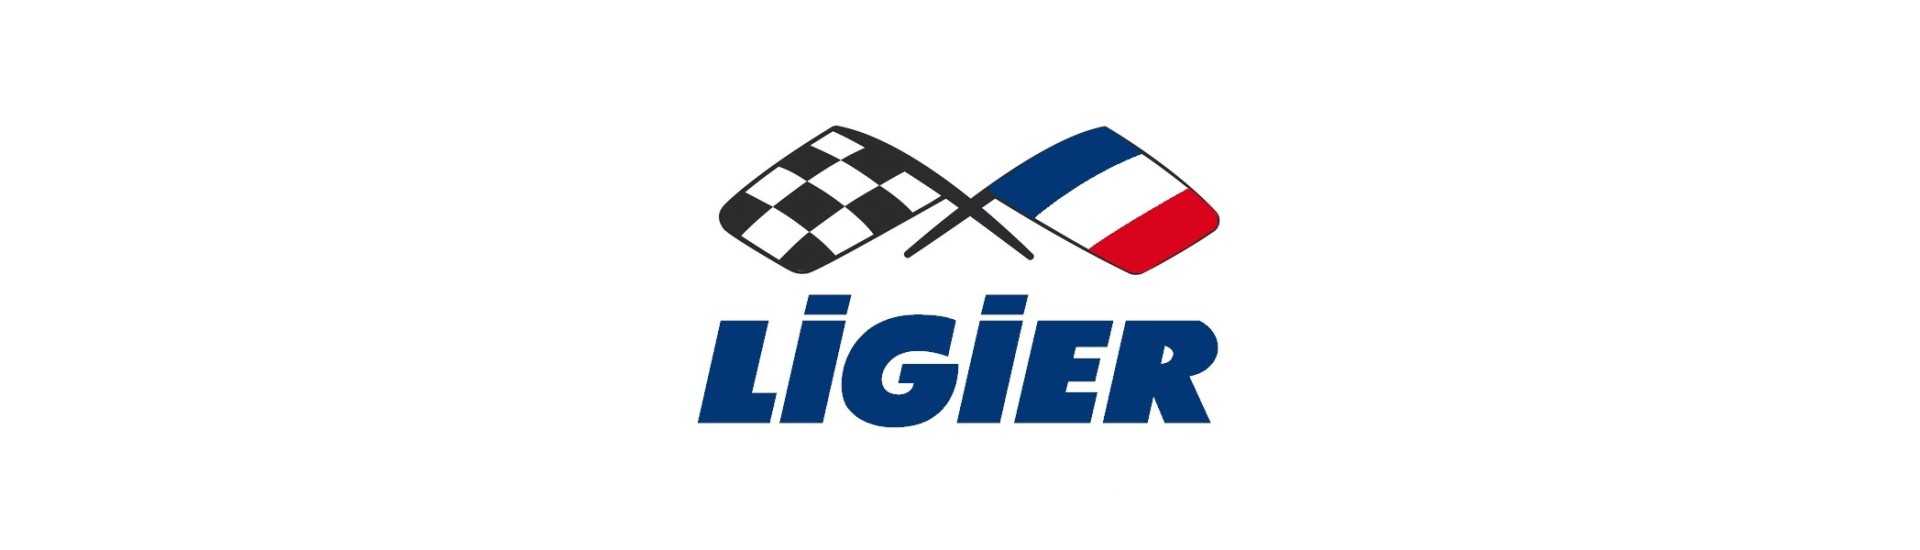 Robinet de chauffage au meilleur prix pour voiture sans permis Ligier